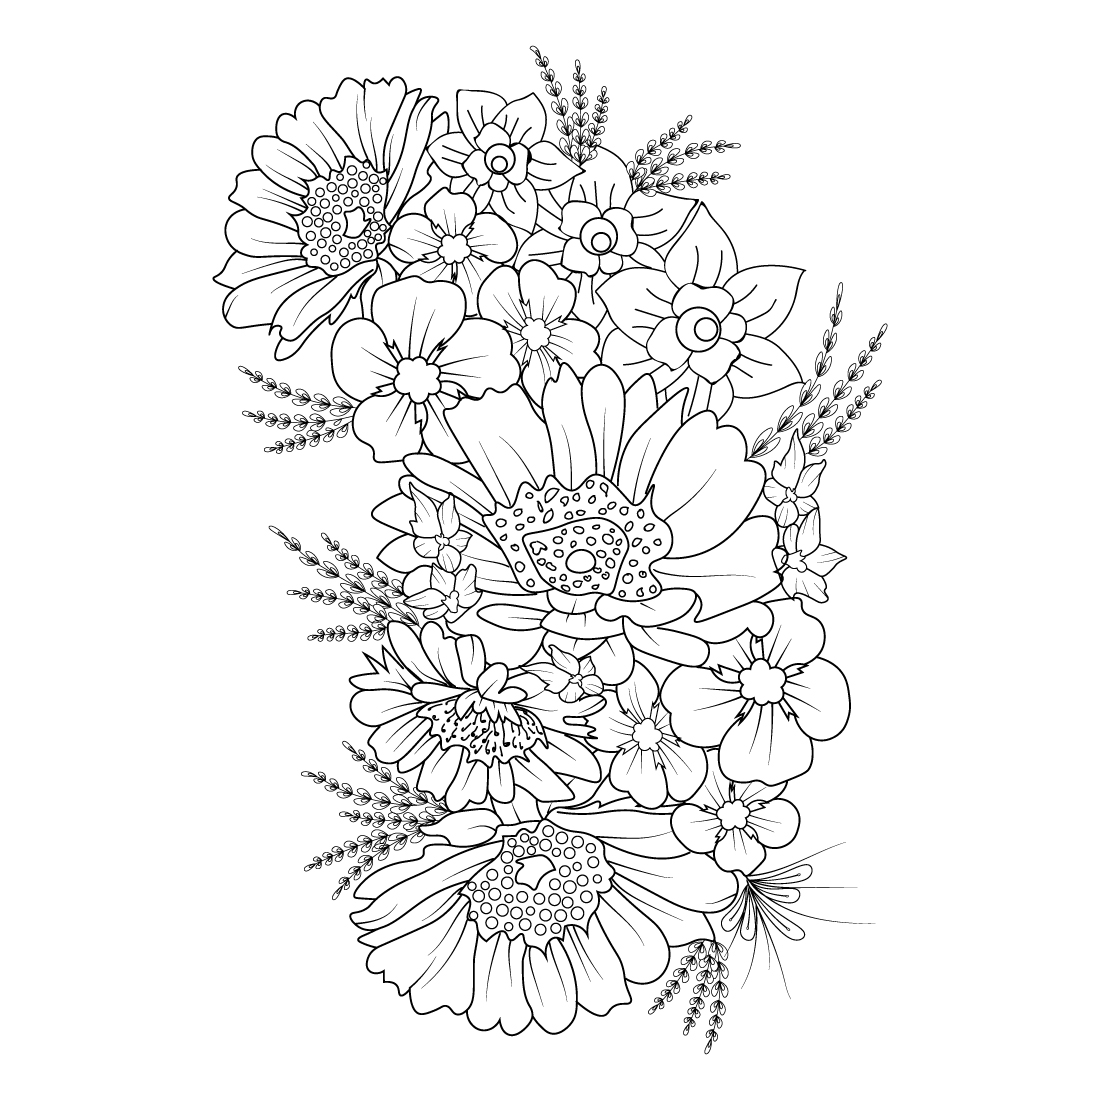 Aesthetic flower doodles, aesthetic flower doodles transparent background, aesthetic flower doodle simple, flower doodle art, flower doodle zentangle art, flower doodle zentangle art tattoos cover image.